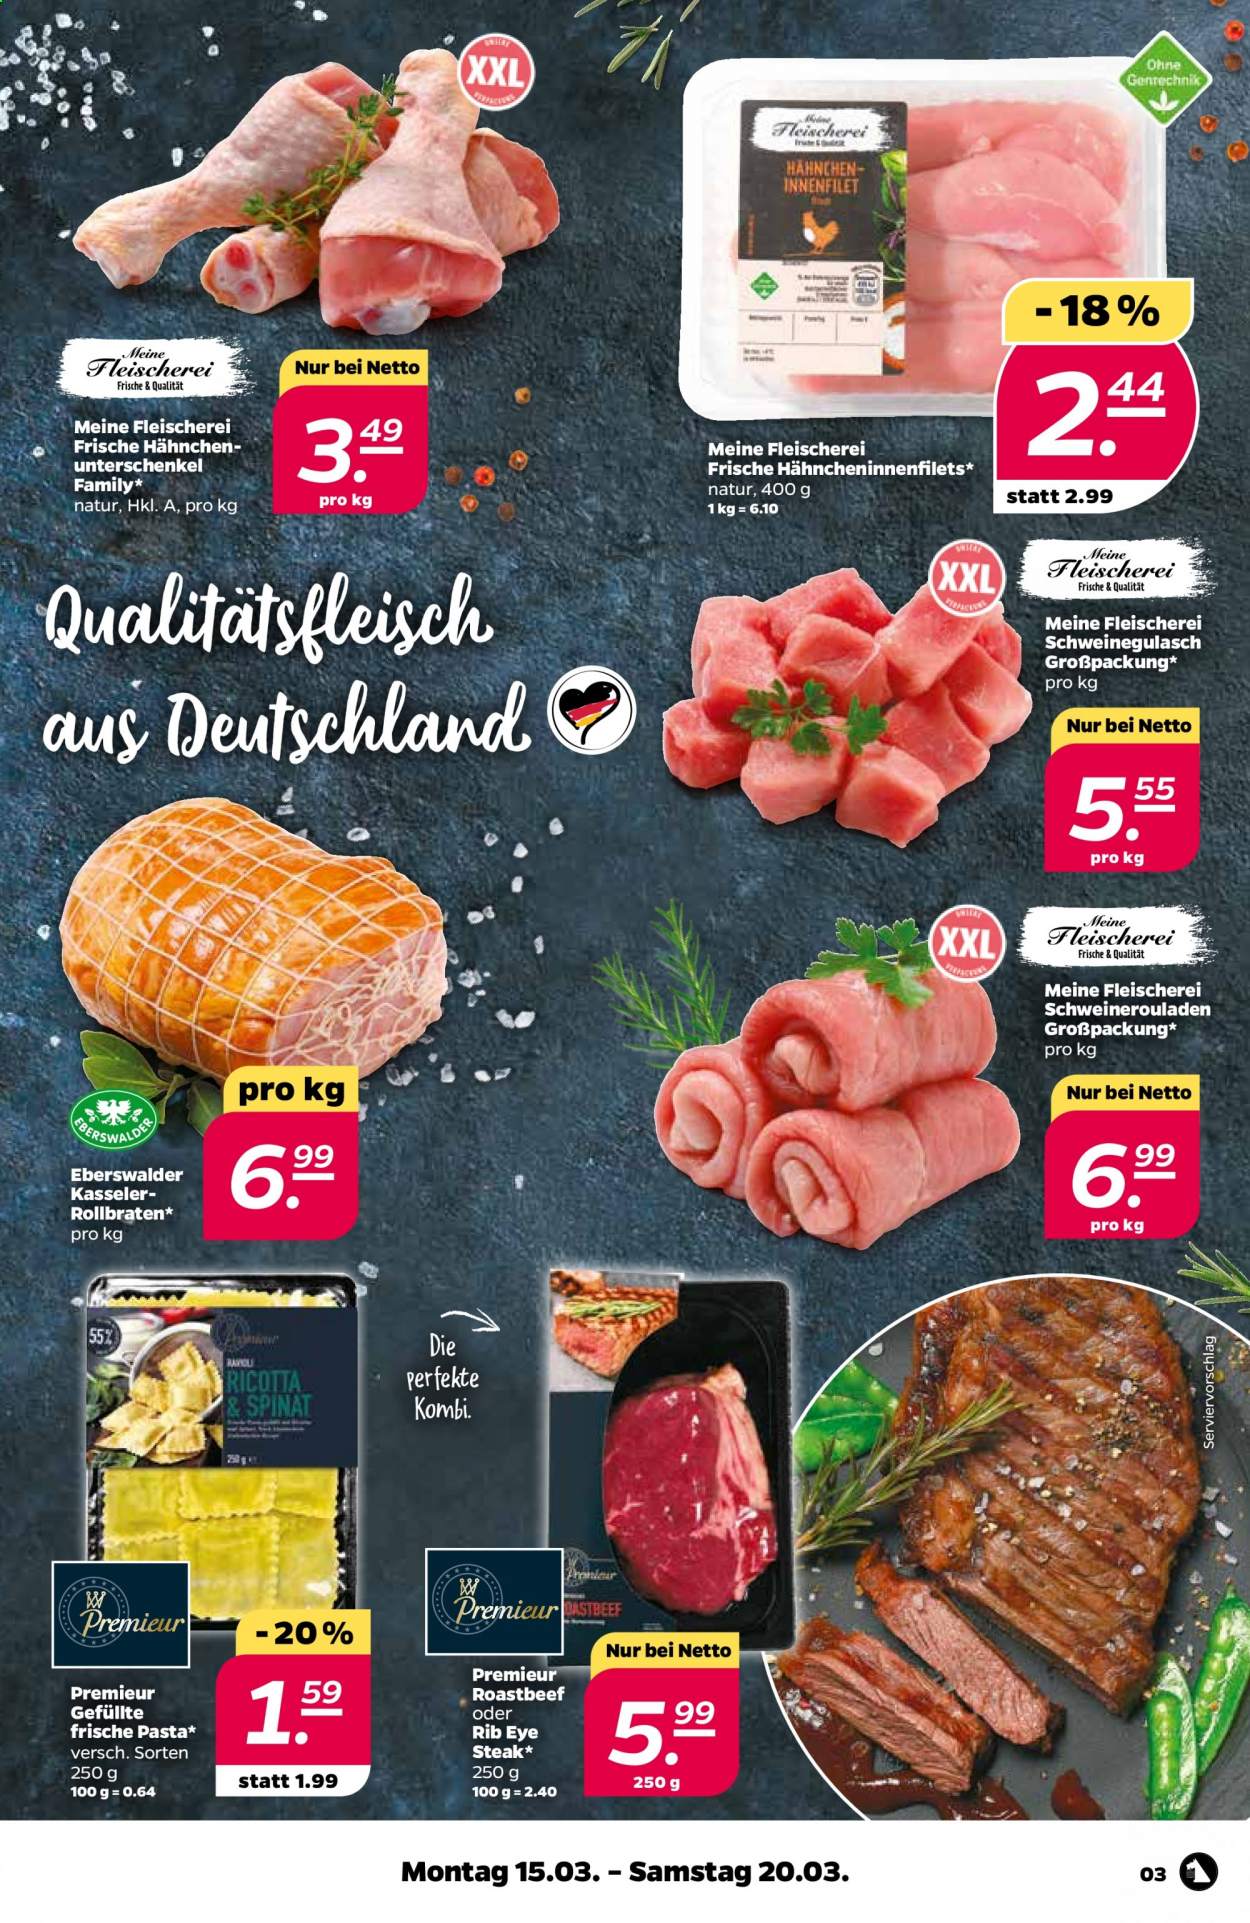 thumbnail - Prospekte Netto - 15.03.2021 - 20.03.2021 - Produkte in Aktion - Steak, Spinat, Roastbeef, Schweinegulasch, Schweineroulade, Frische Pasta. Seite 3.